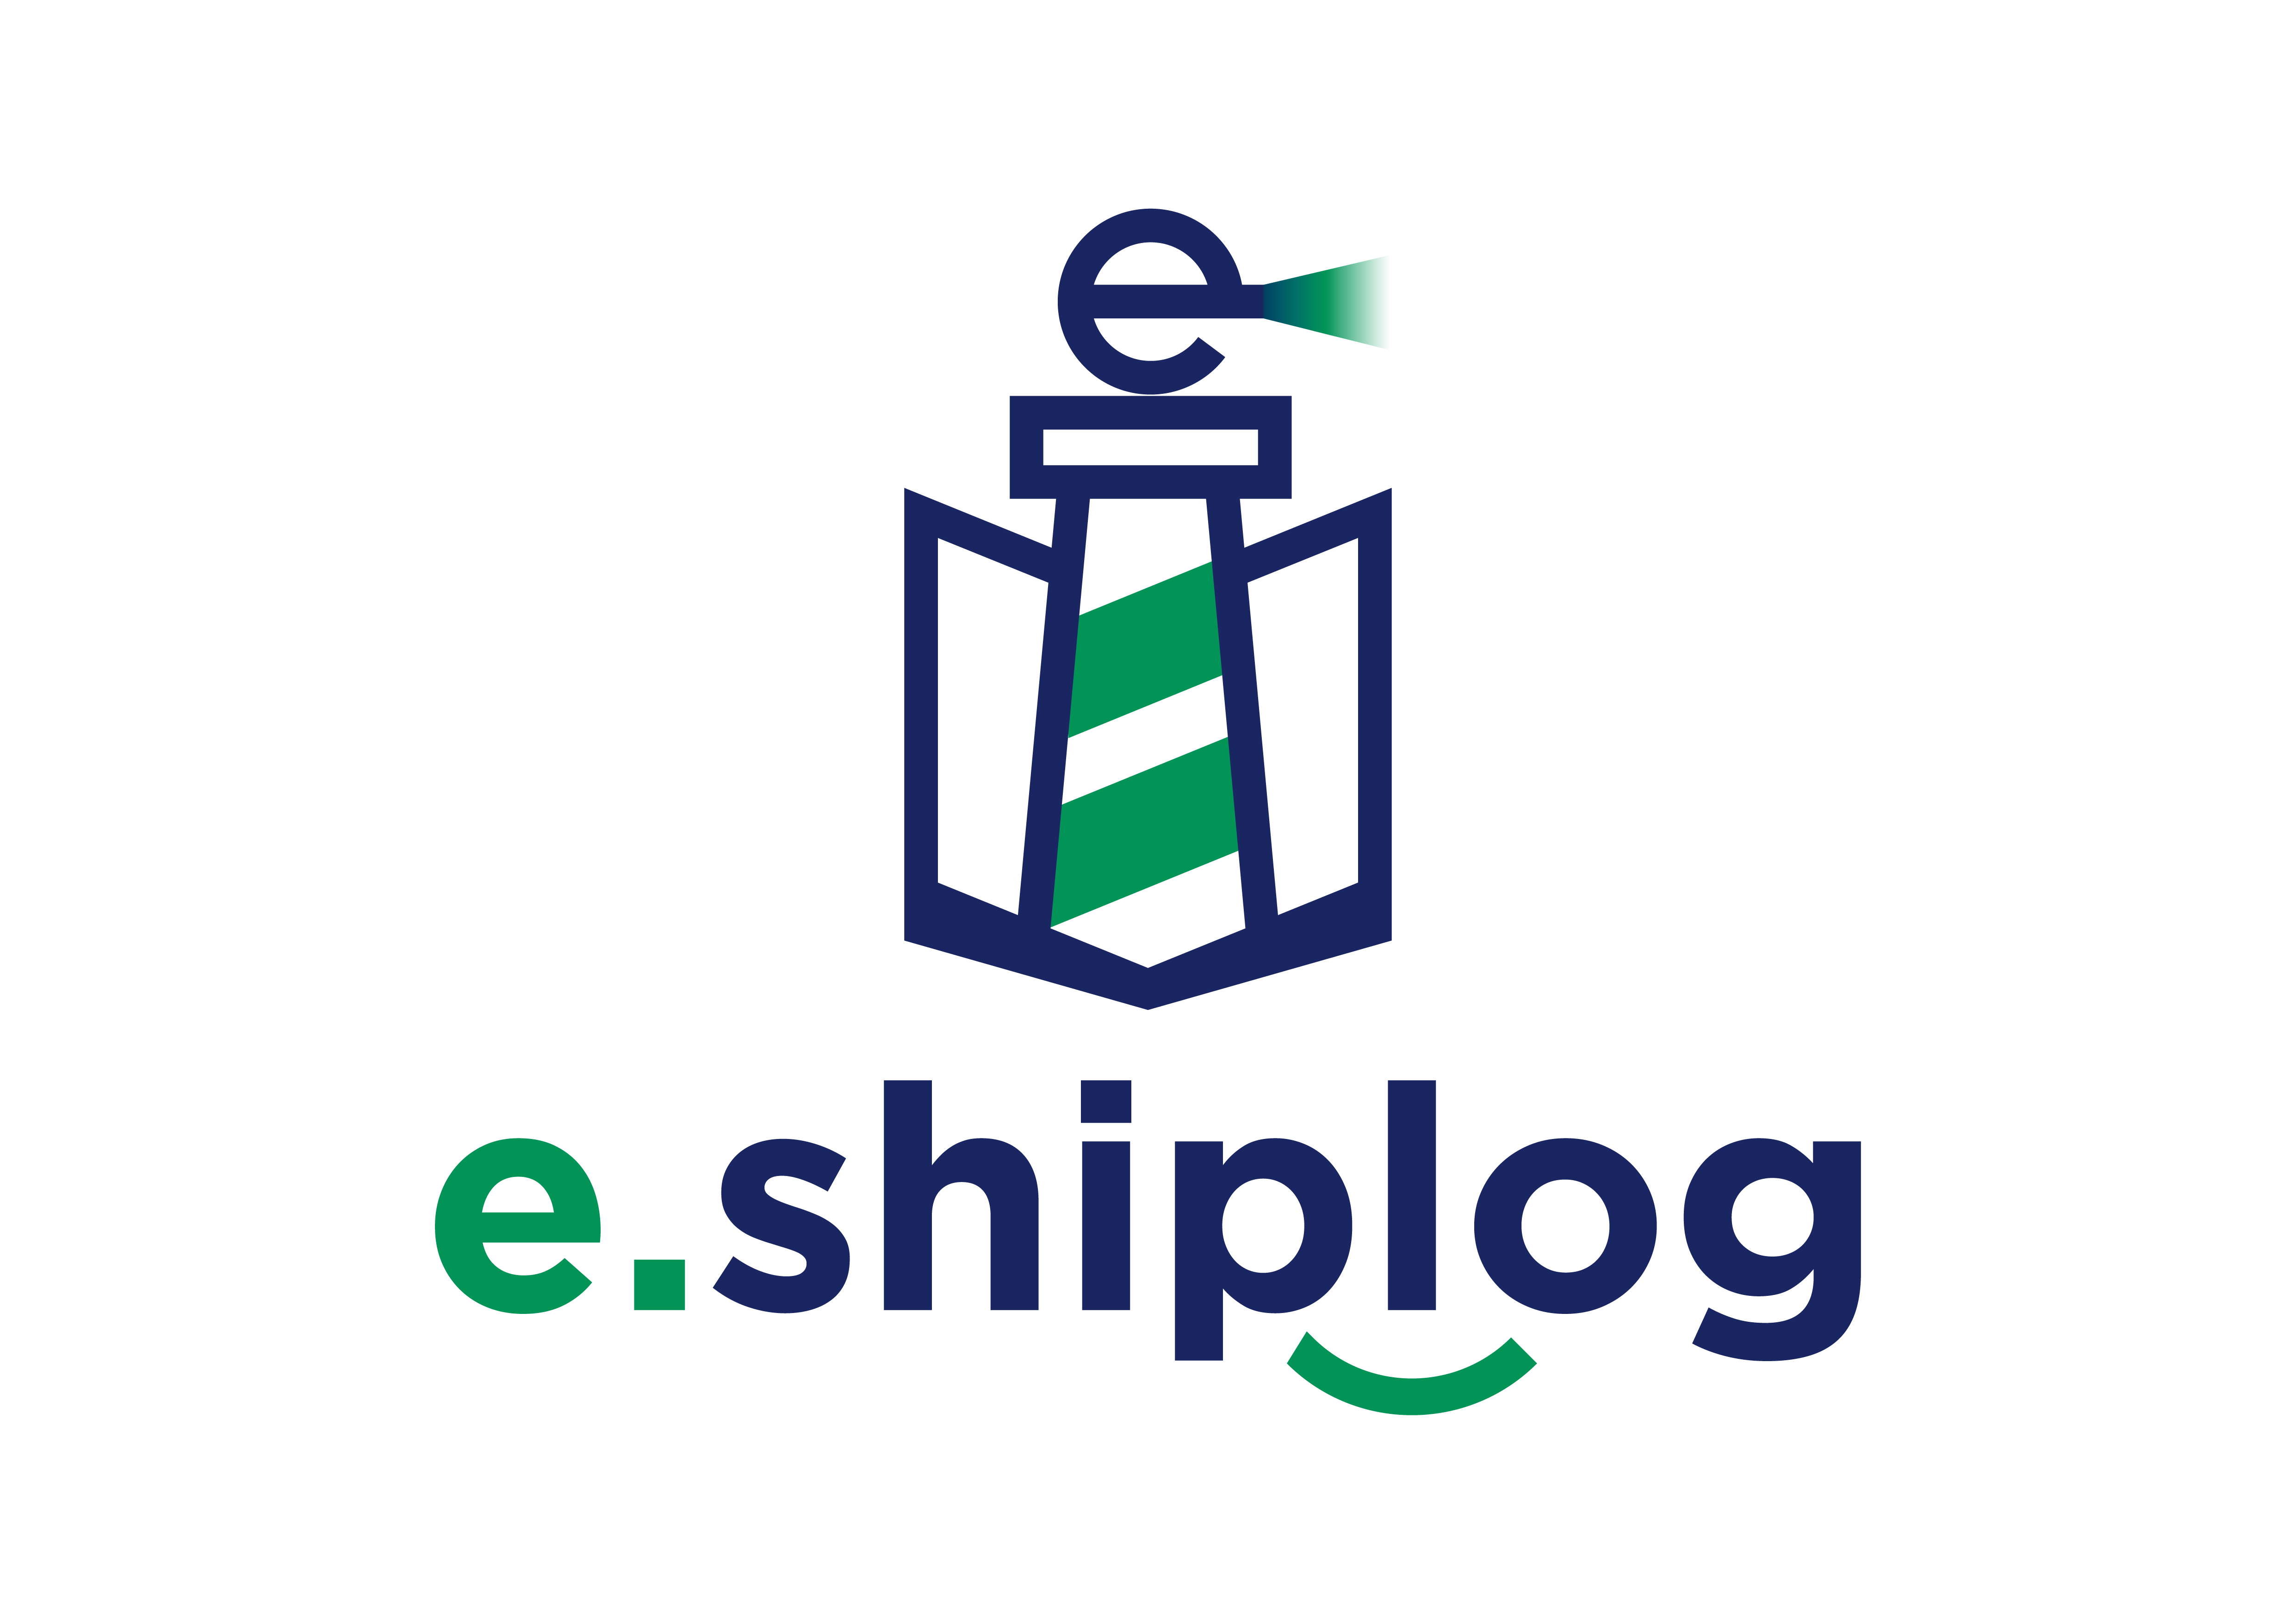 e.shipolog